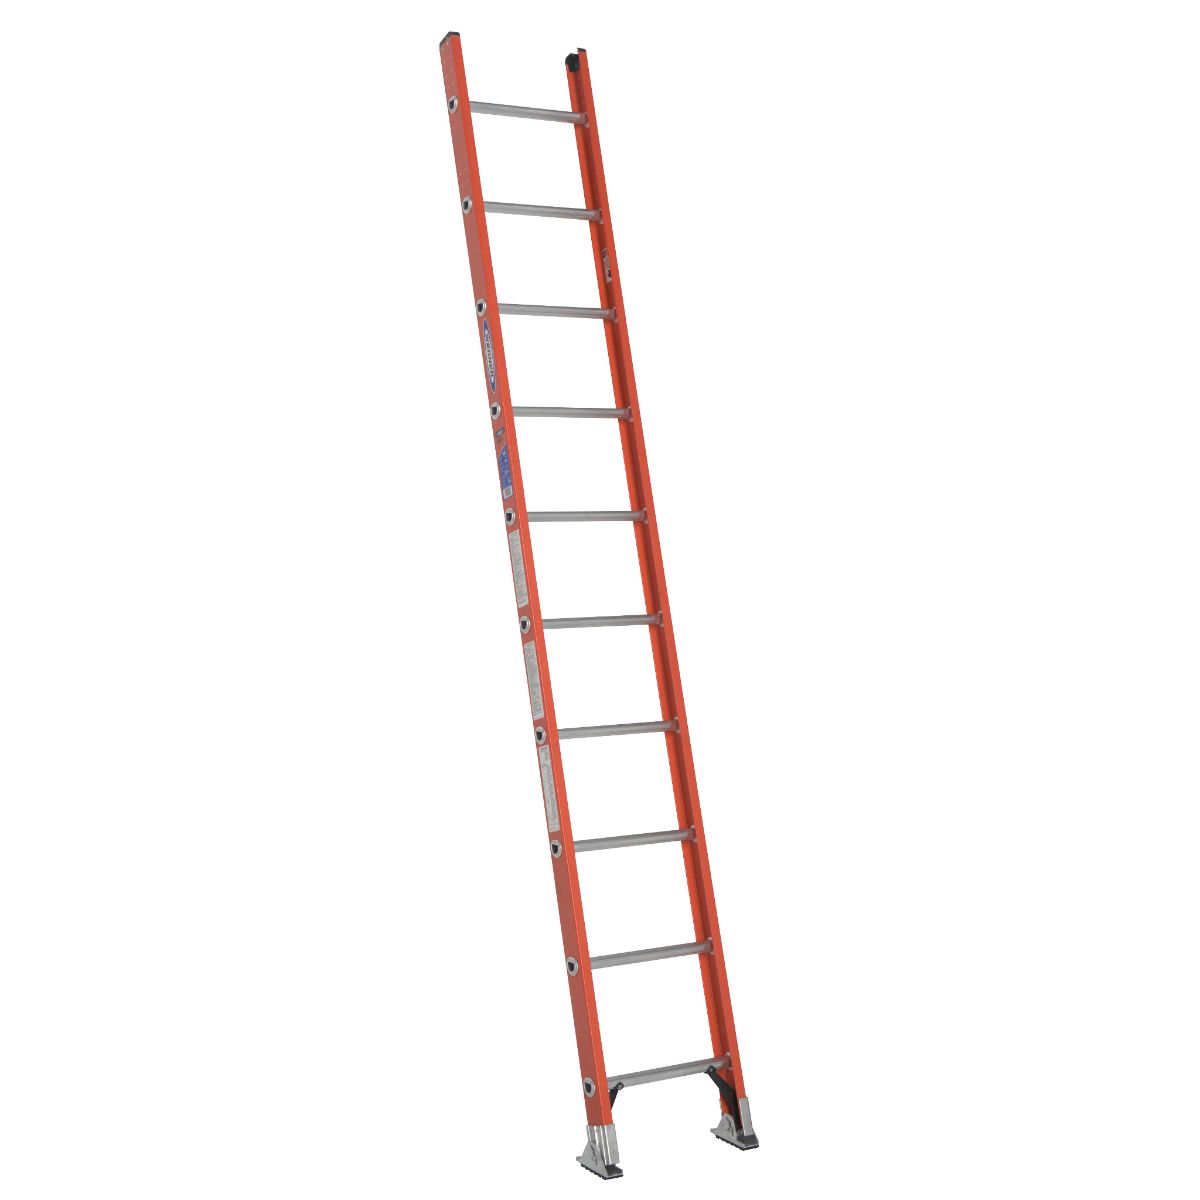 D6210-1 10 Ft. Type Ia Fiberglass D-rung Straight Ladder